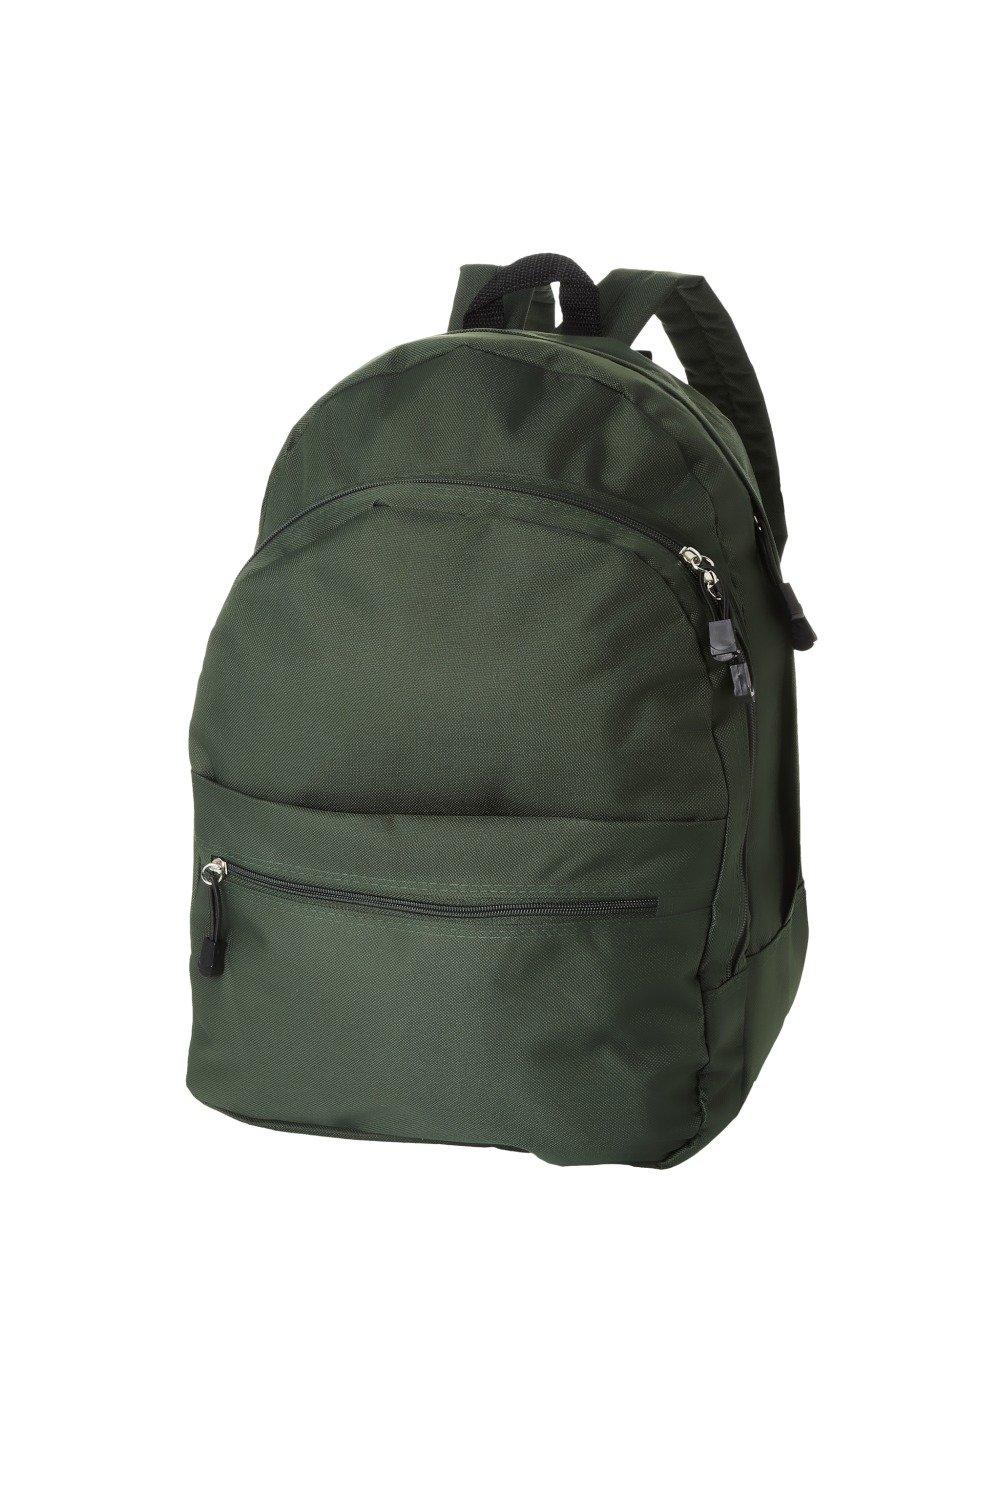 Рюкзак Trend (2 шт.) Bullet, зеленый